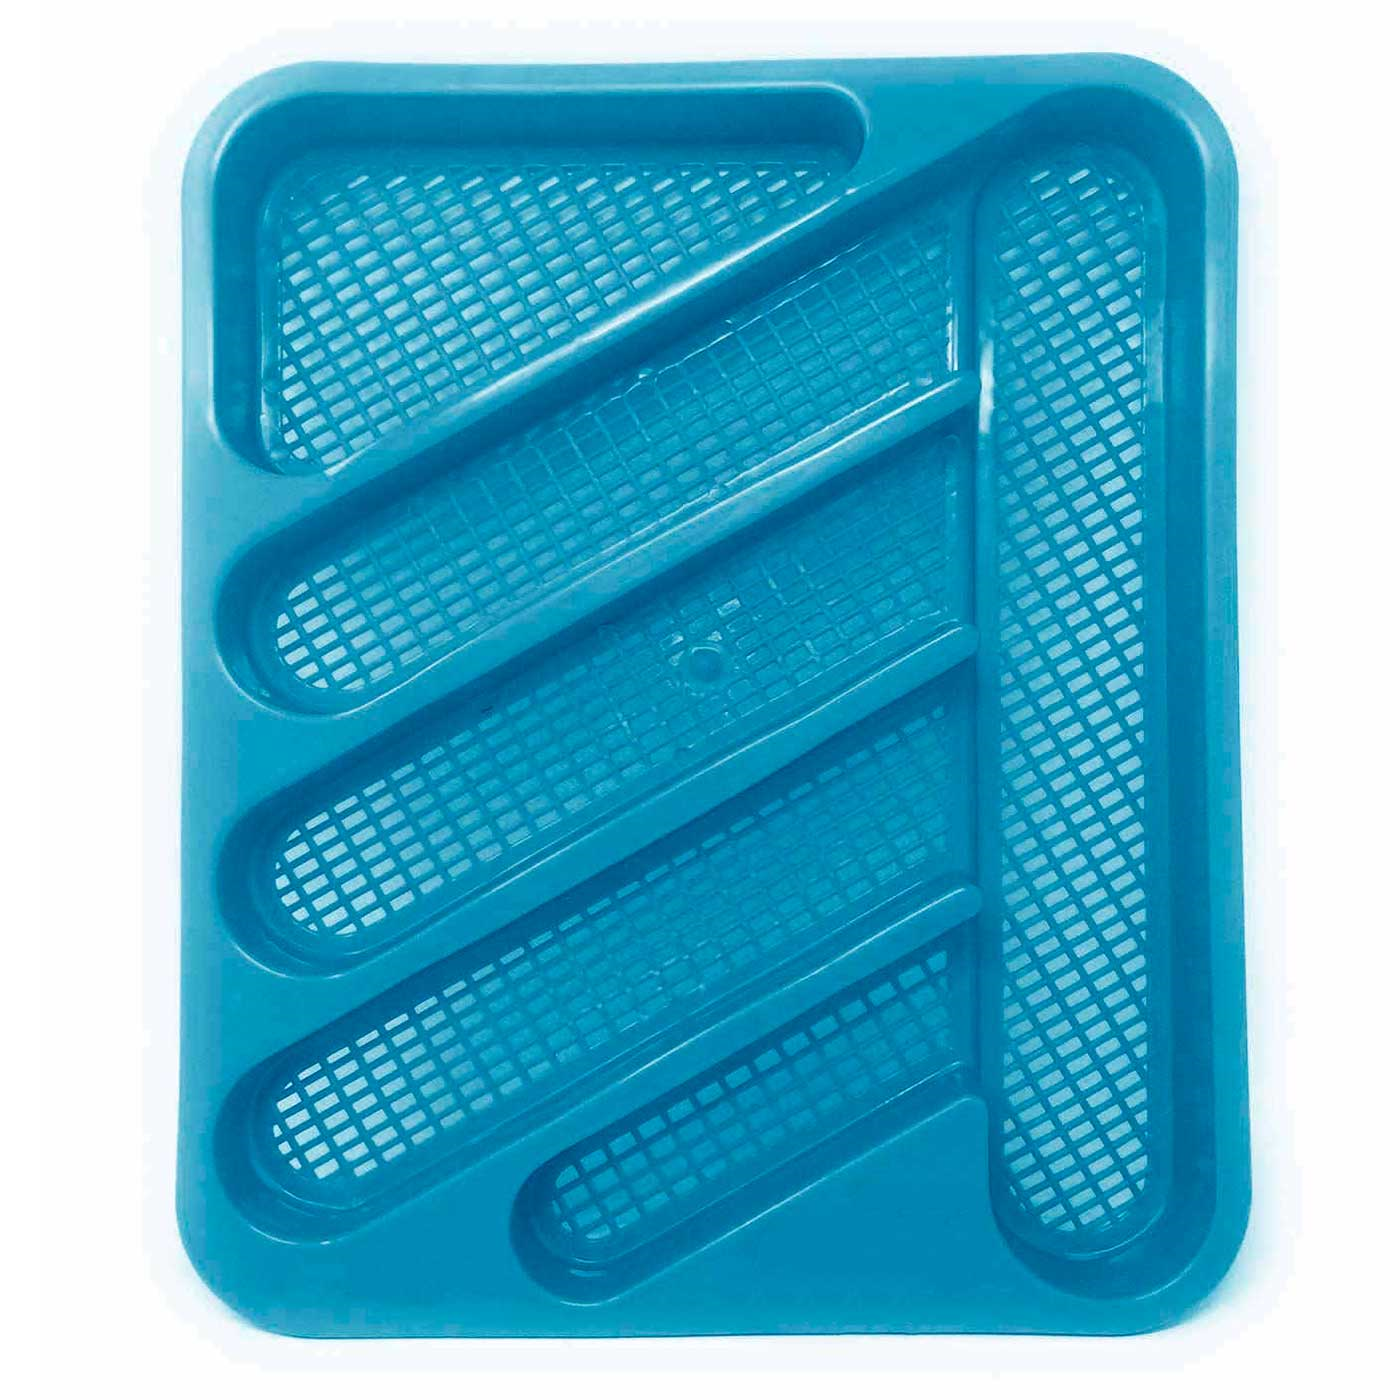 Tradineur - Escurreplatos de plástico rectangular con bandeja